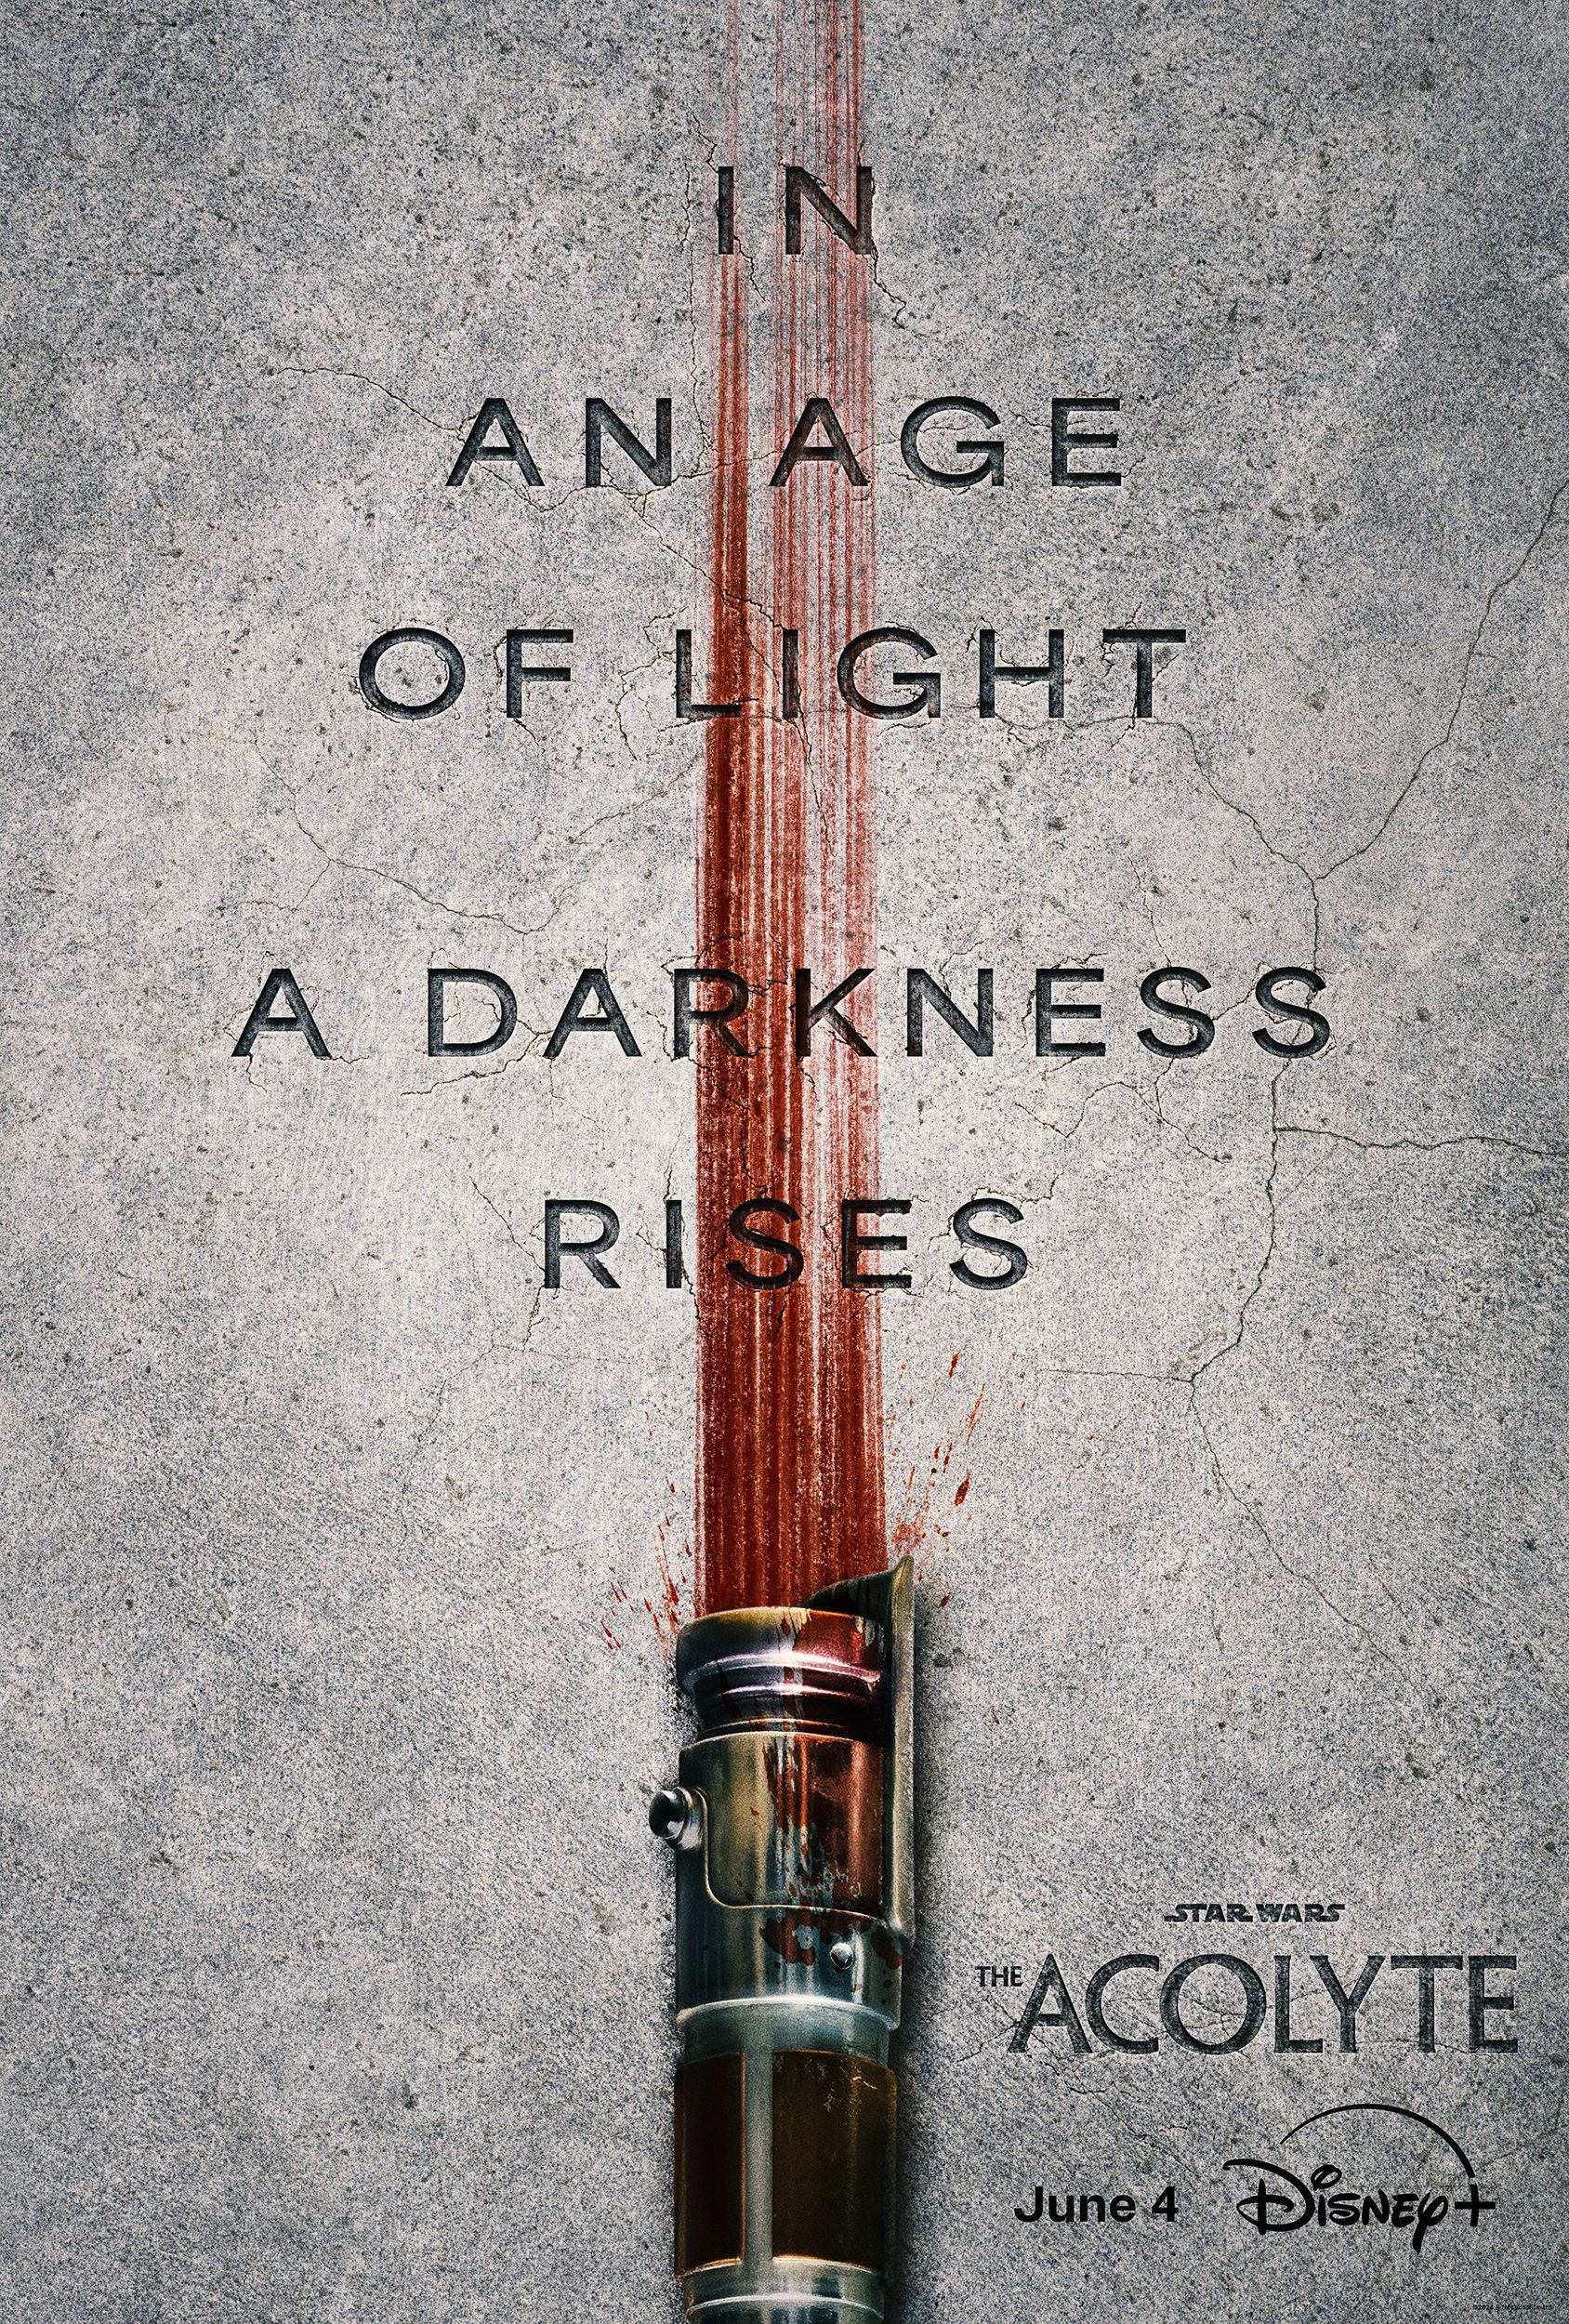 Pôster do programa de TV Star Wars The Acolyte mostrando um sabre de luz no chão com uma lança de sangue semelhante à lâmina